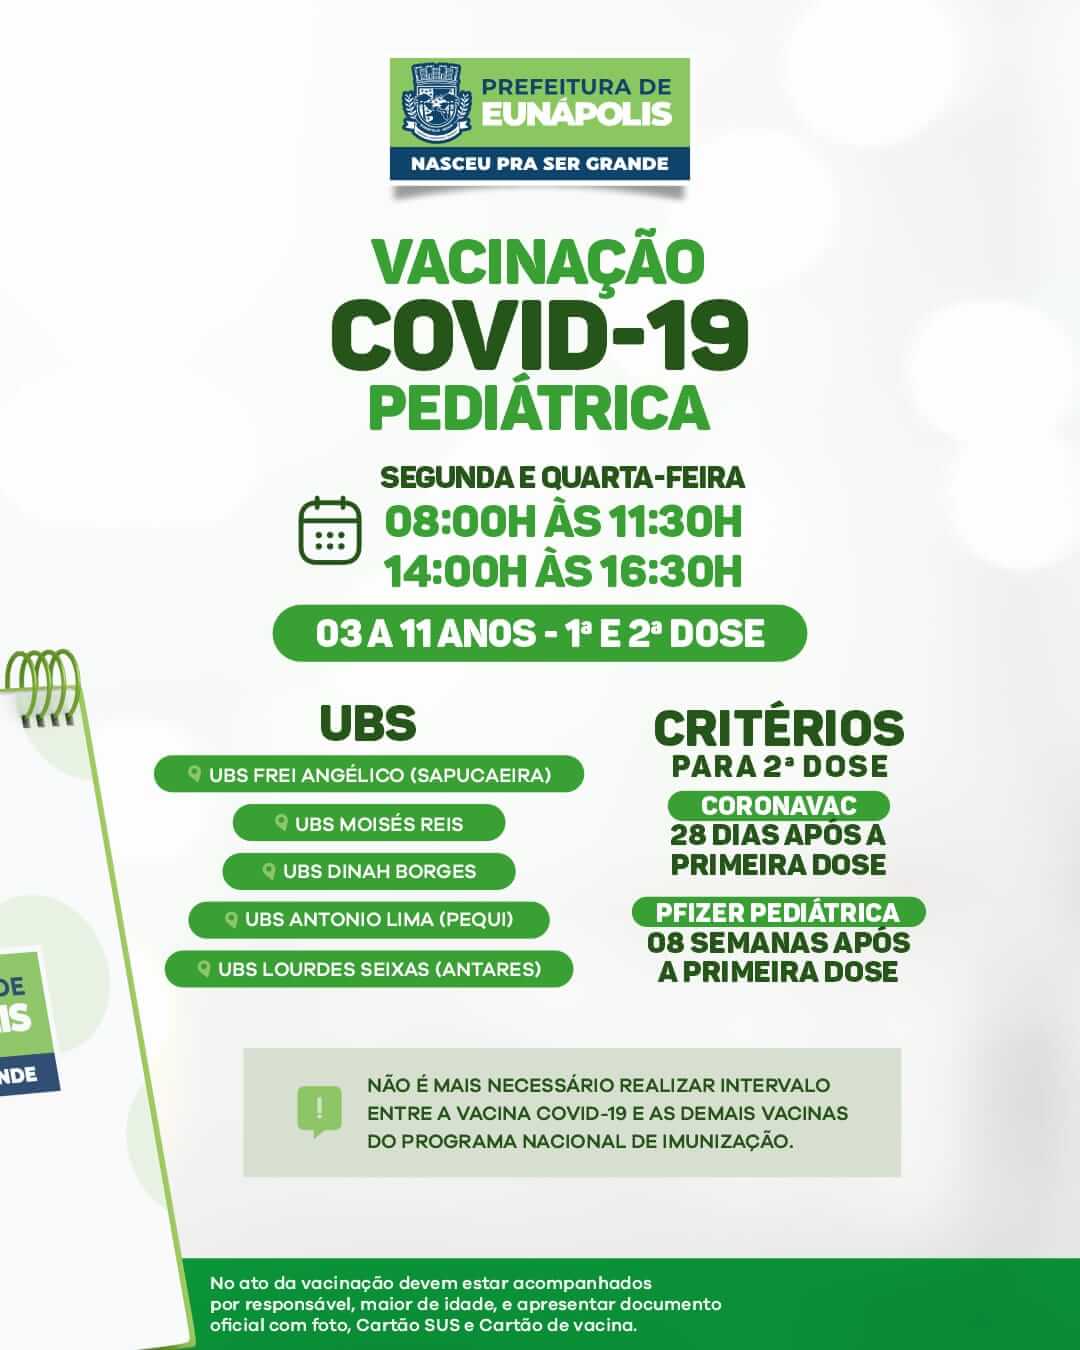 Prefeitura solicita que eunapolitanos atualizem a caderneta de vacinação 6